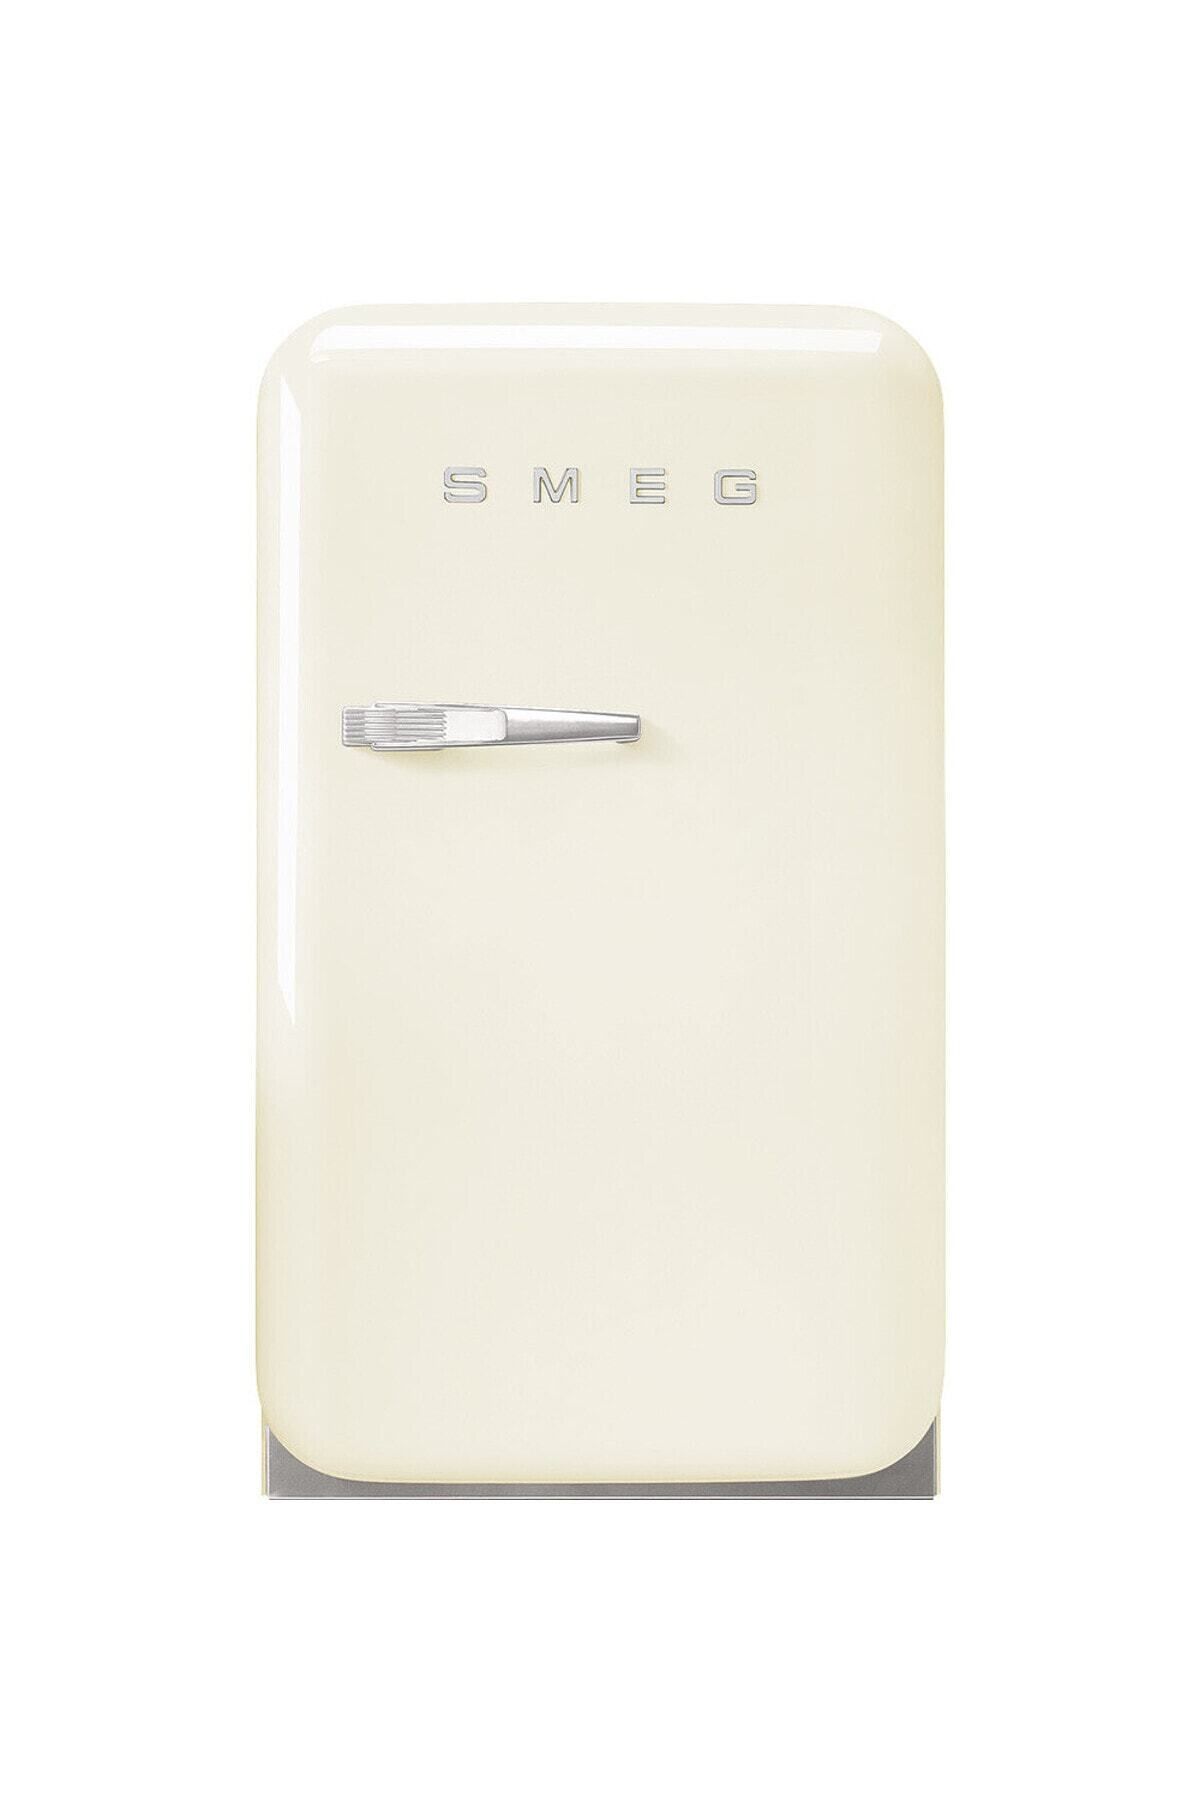 Smeg 50's Style Retro Krem Mini Buzdolabı Fab5rcr Sağ Kapı